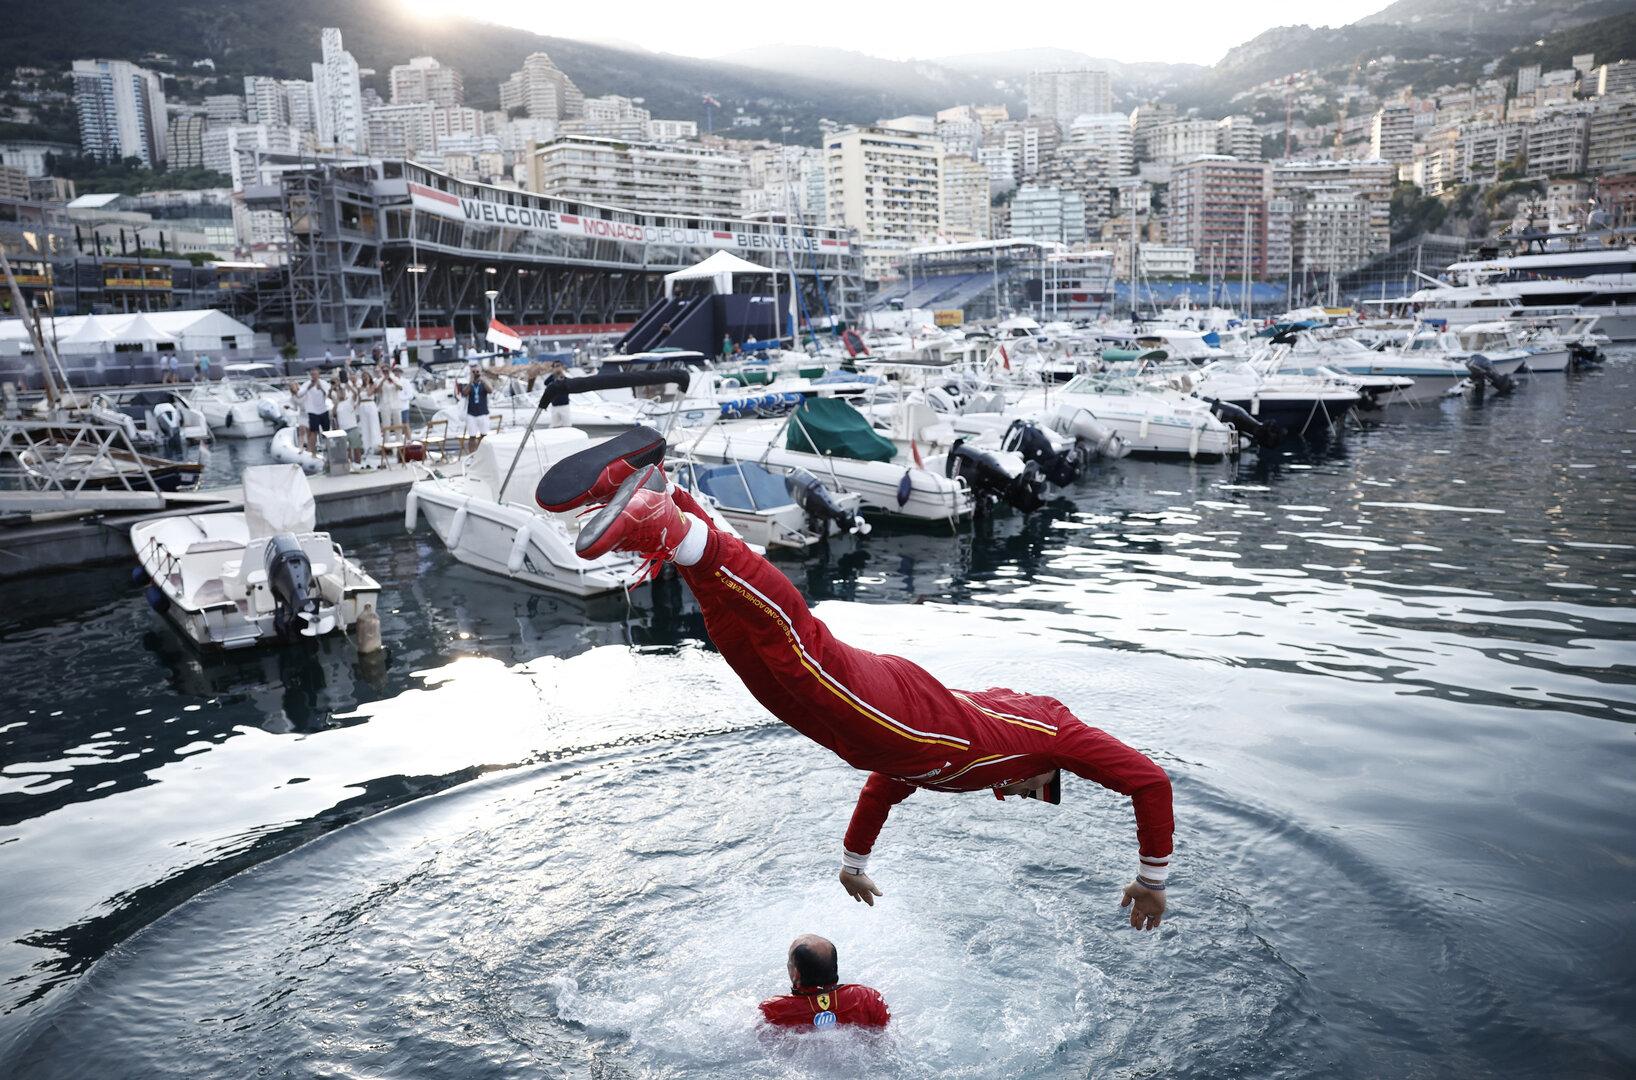 So reagiert die Formel-1-Welt auf den faden Grand Prix in Monaco